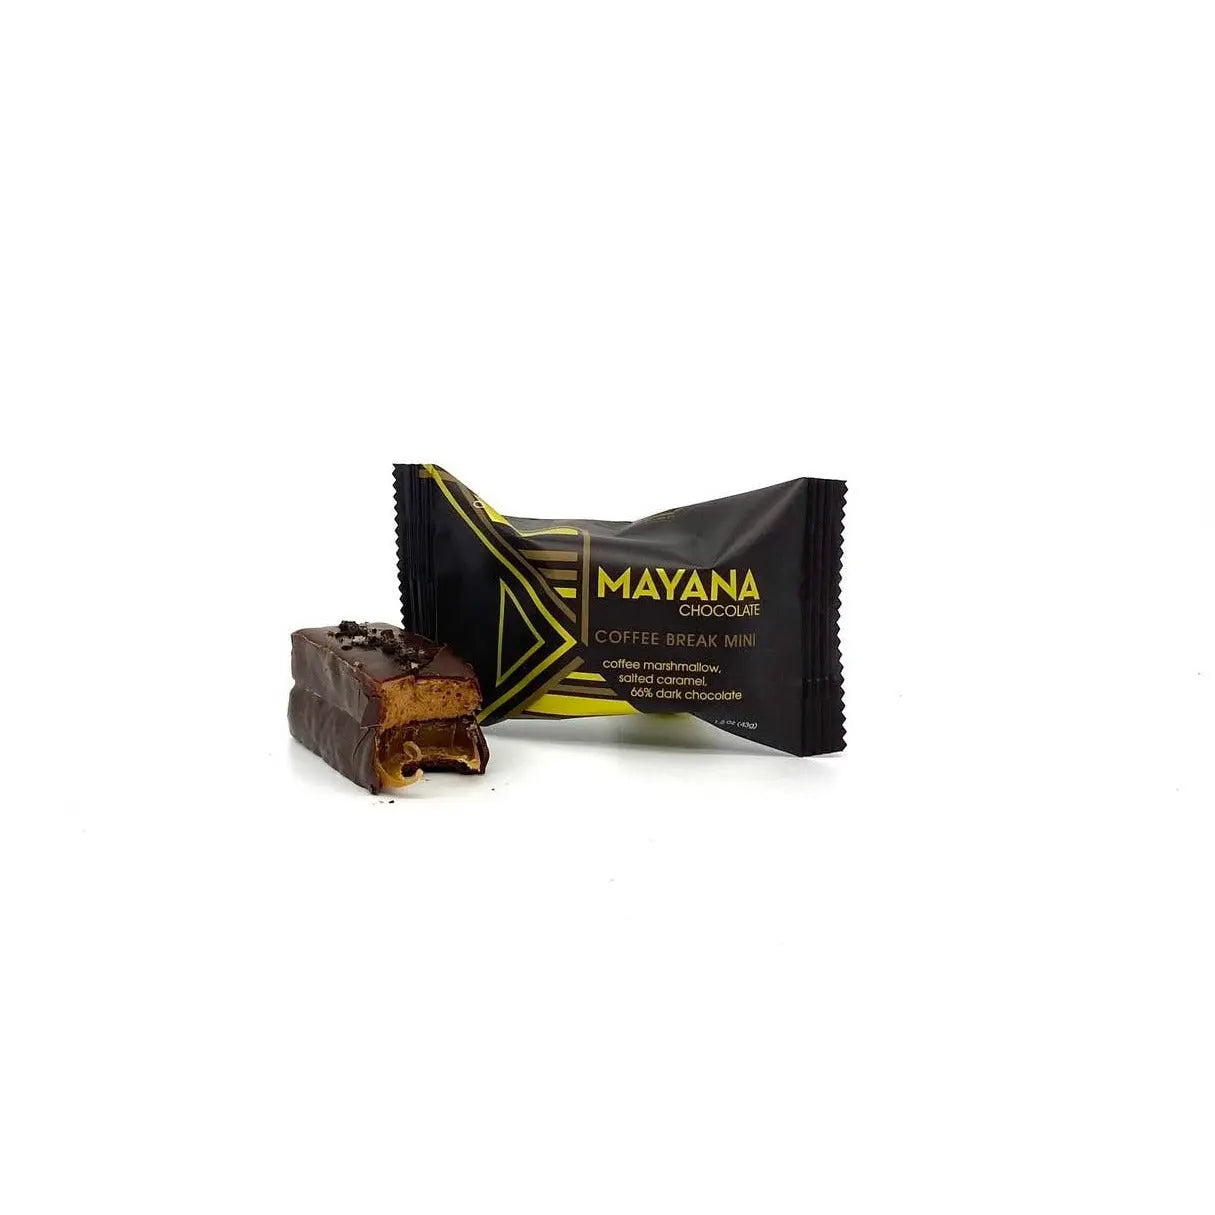 Mayana Chocolate Coffee Break Mini Mayana Chocolate